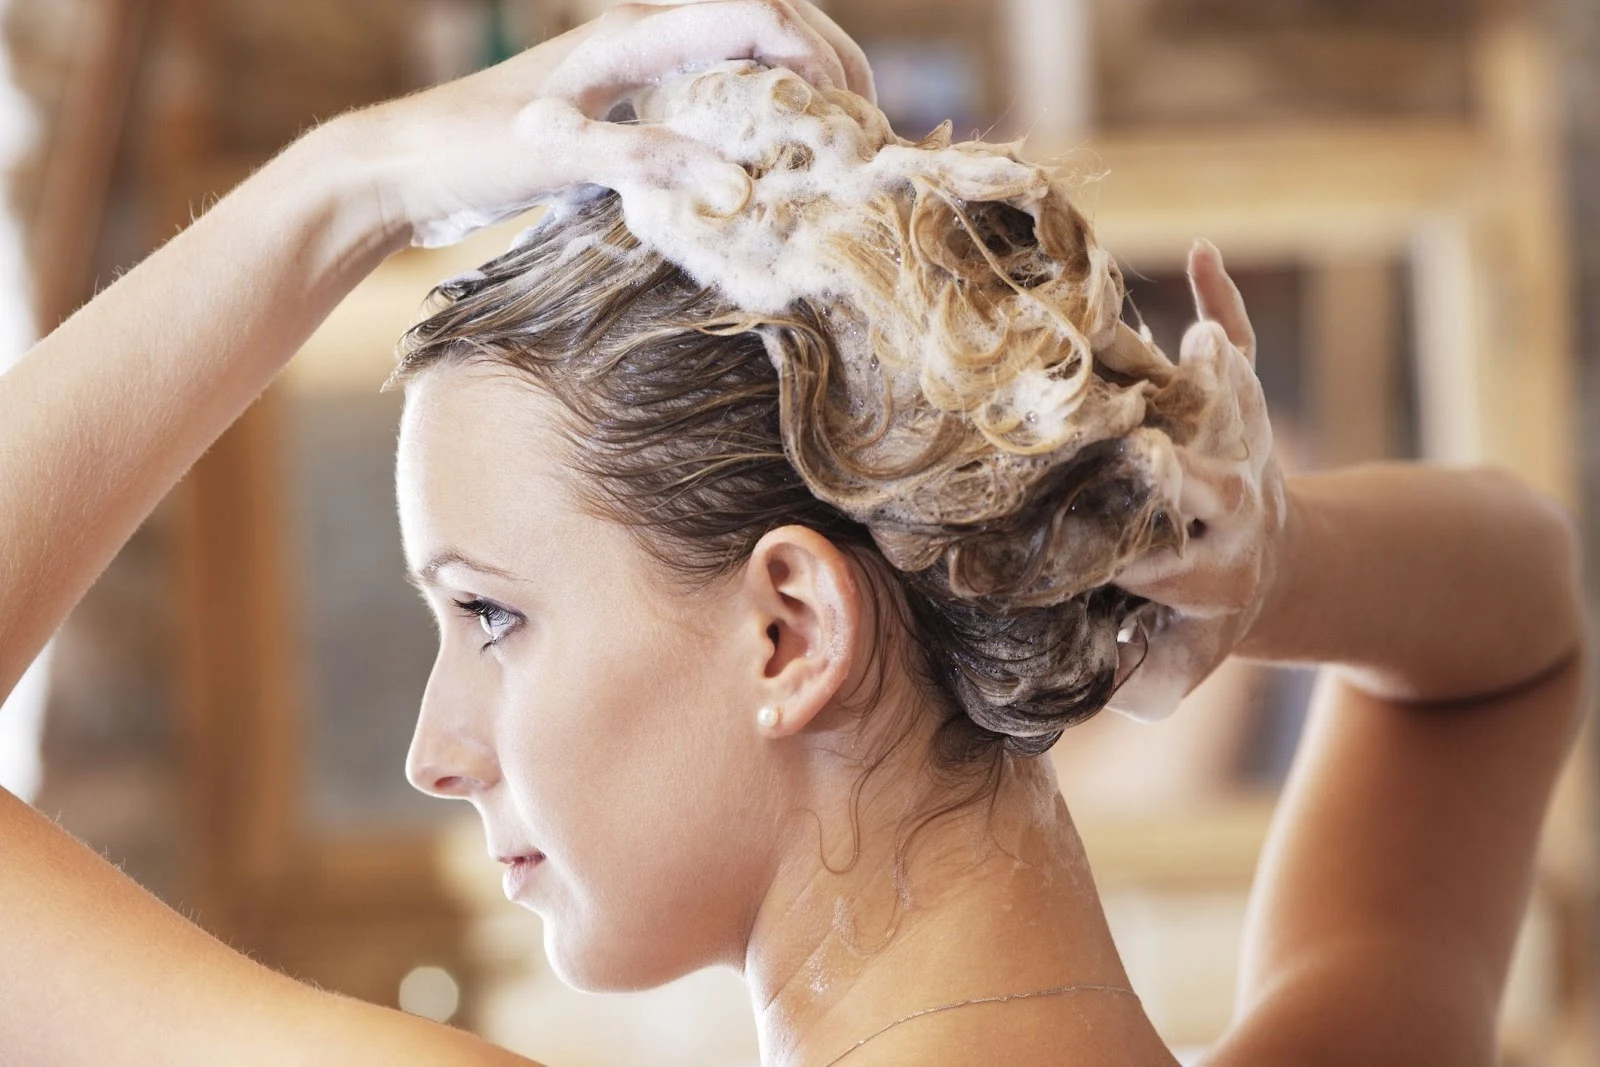 بعد تصفيف شعرك أو تركه يجف في الهواء ، قد ترغب في إضافة القليل من الرطوبة مرة أخرى. أيضًا في الأيام التي لا تغسل فيها شعرك ، قد تستفيد خيوطك من زيادة الرطوبة